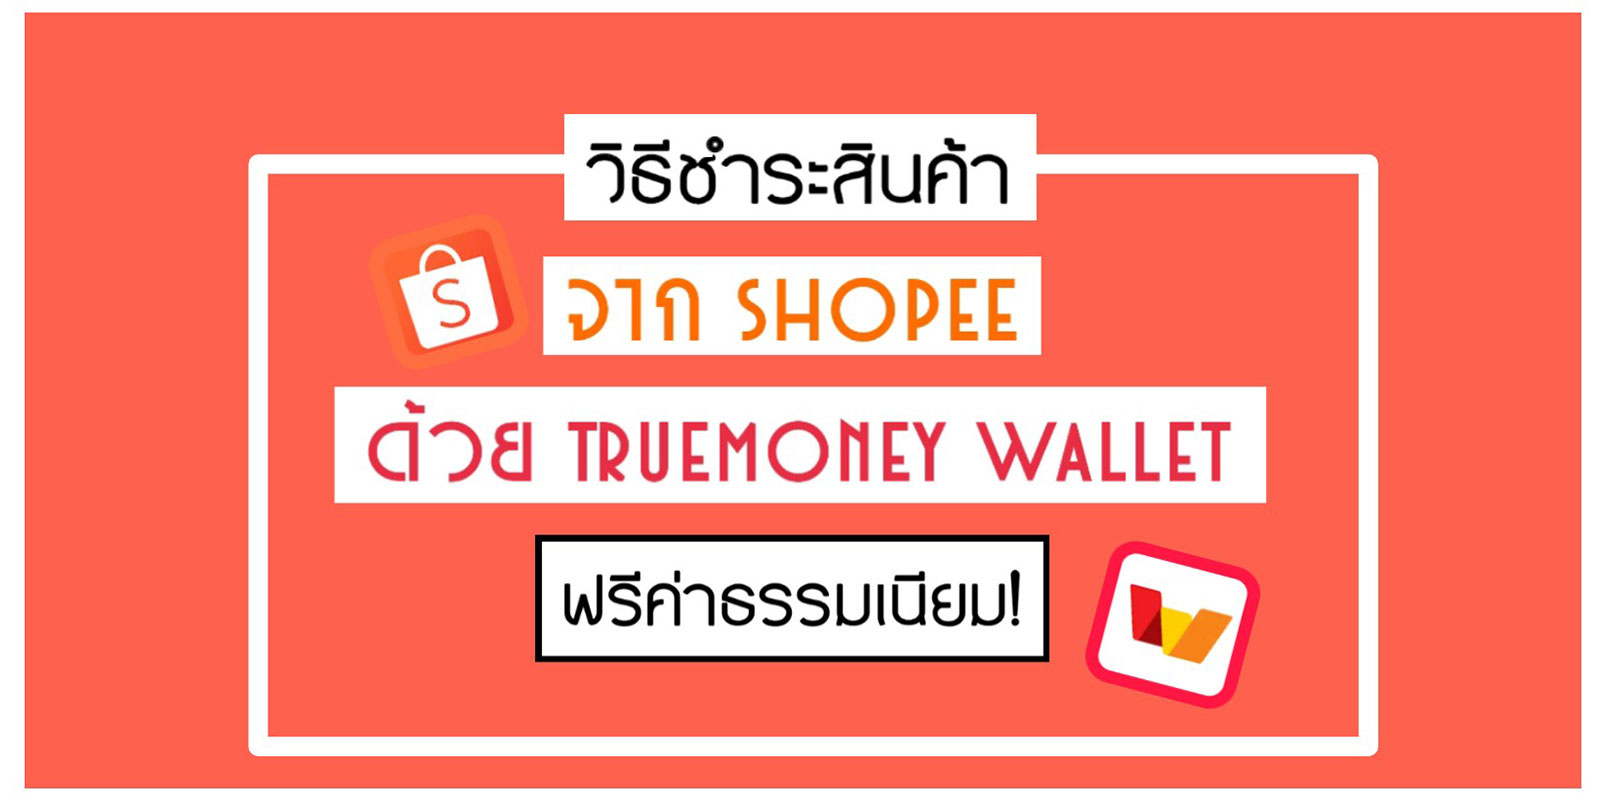 วิธีชำระสินค้าจาก Shopee ด้วย Truemoney Wallet ฟรีค่าธรรมเนียม!  #ช้อปได้ประหยัดด้วย | Trueid Creator